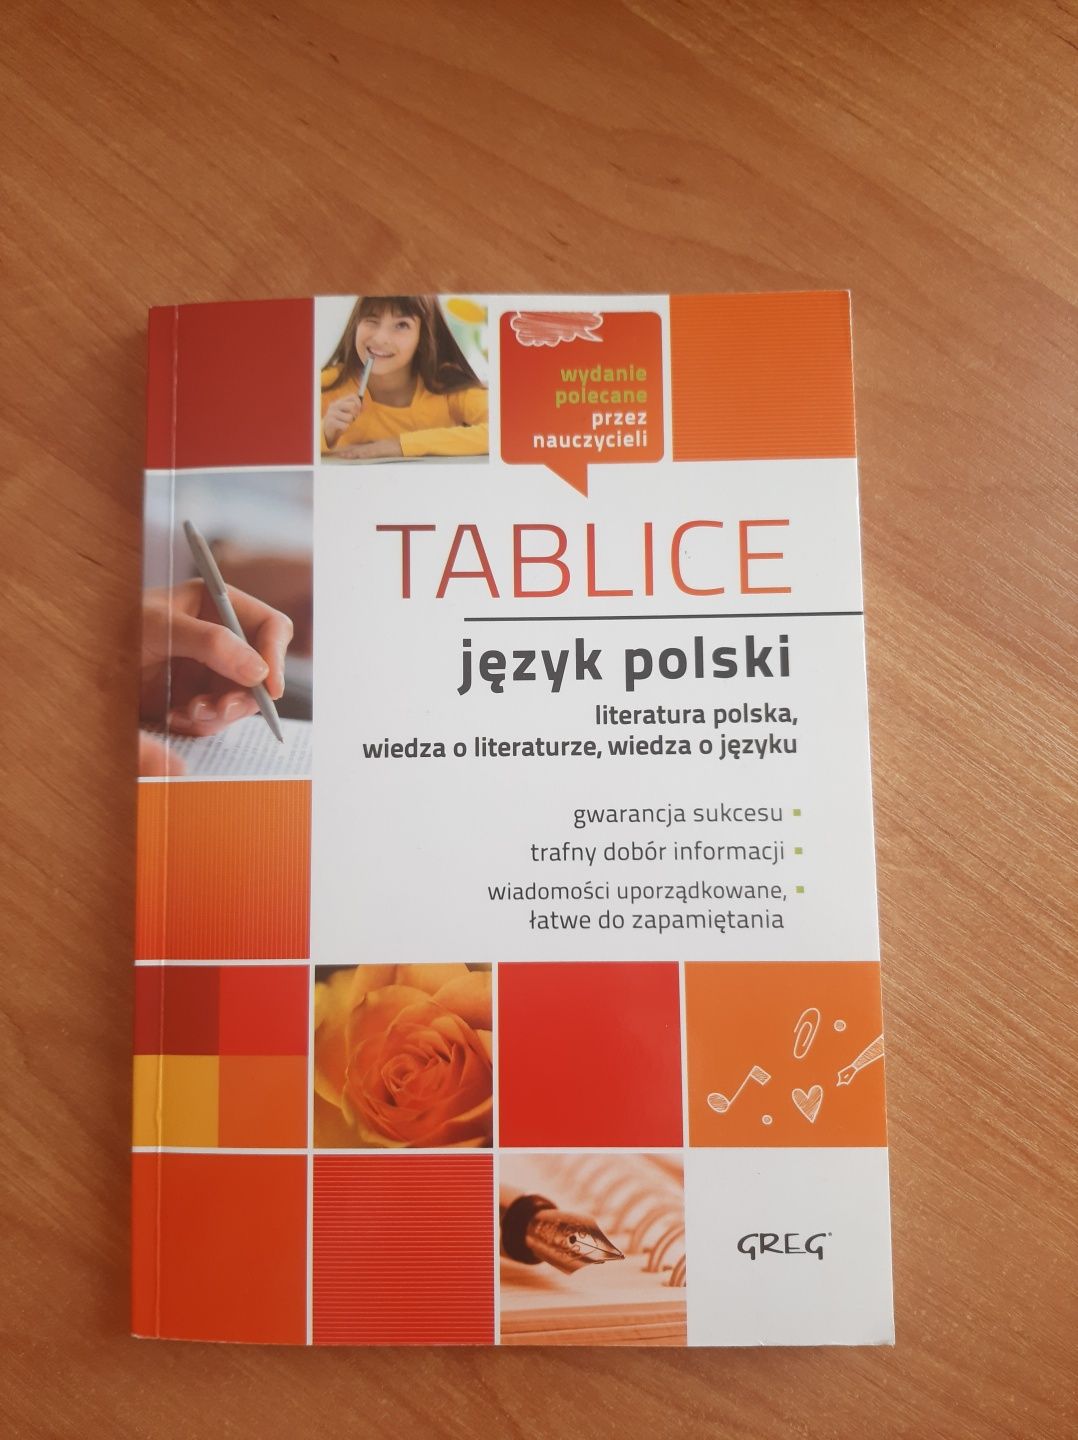 Tablice Język polski